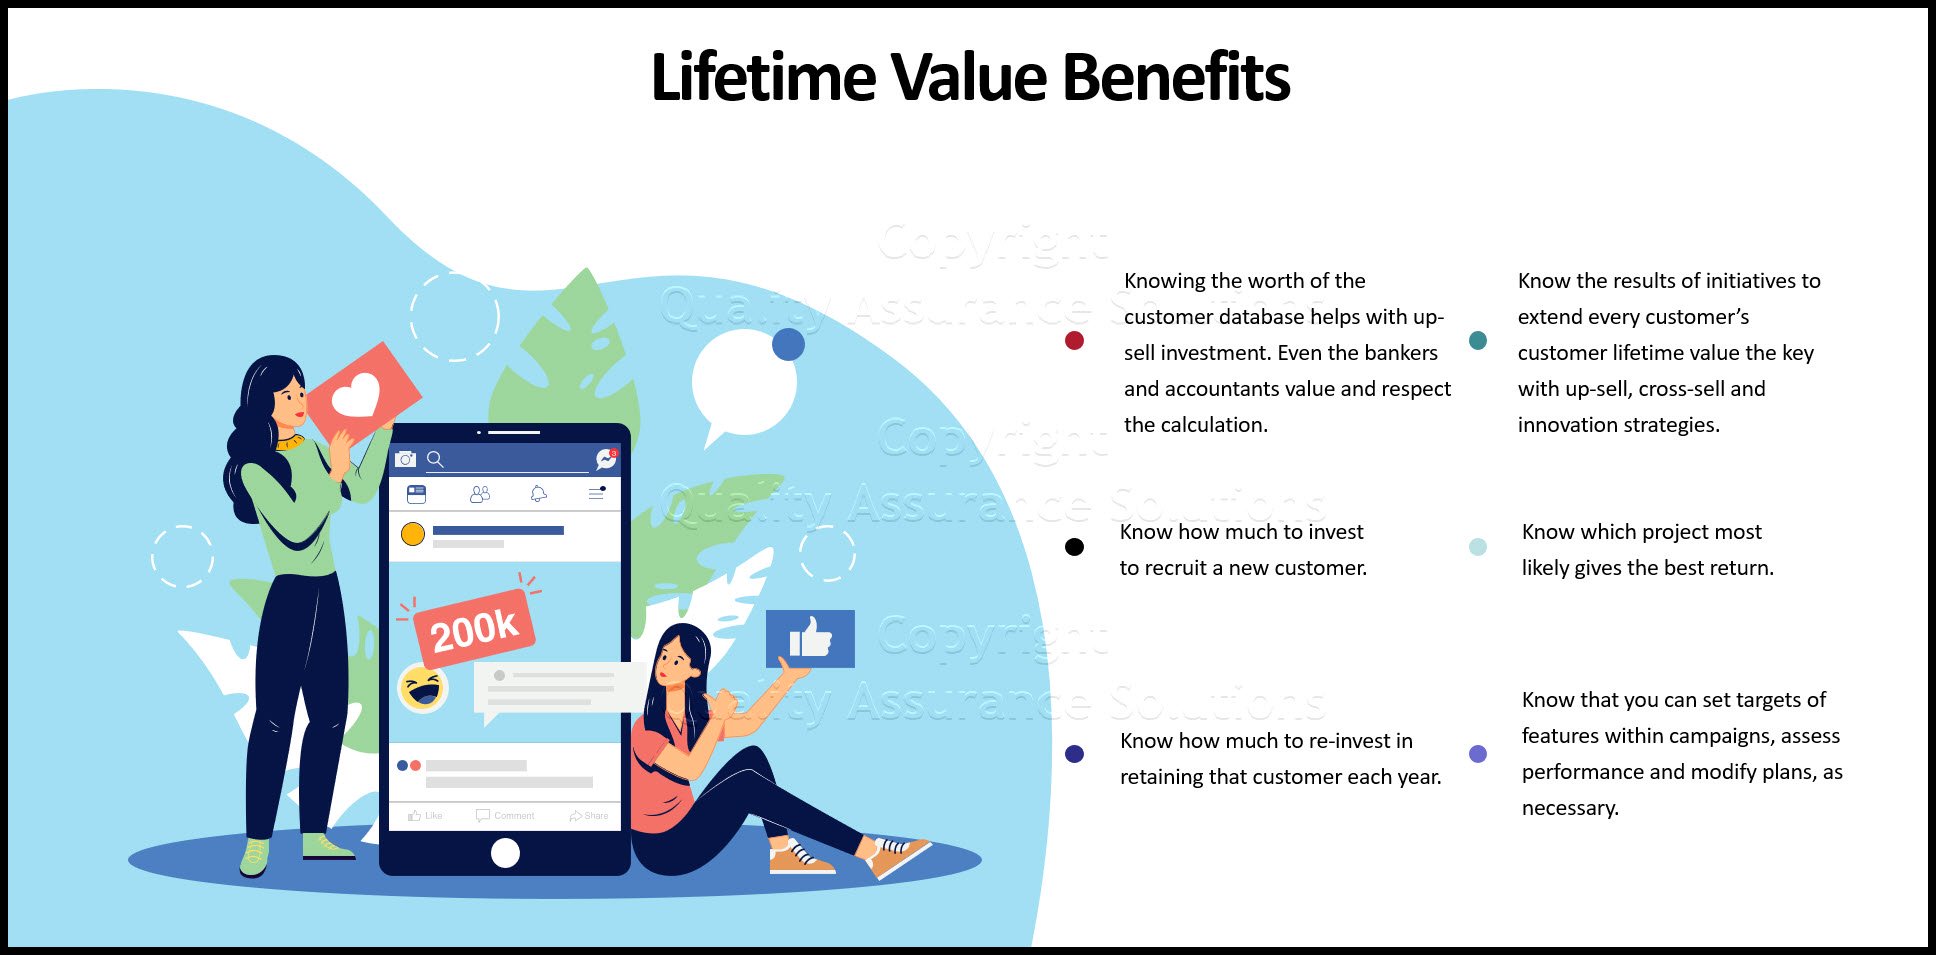 customer lifetime value the key slide